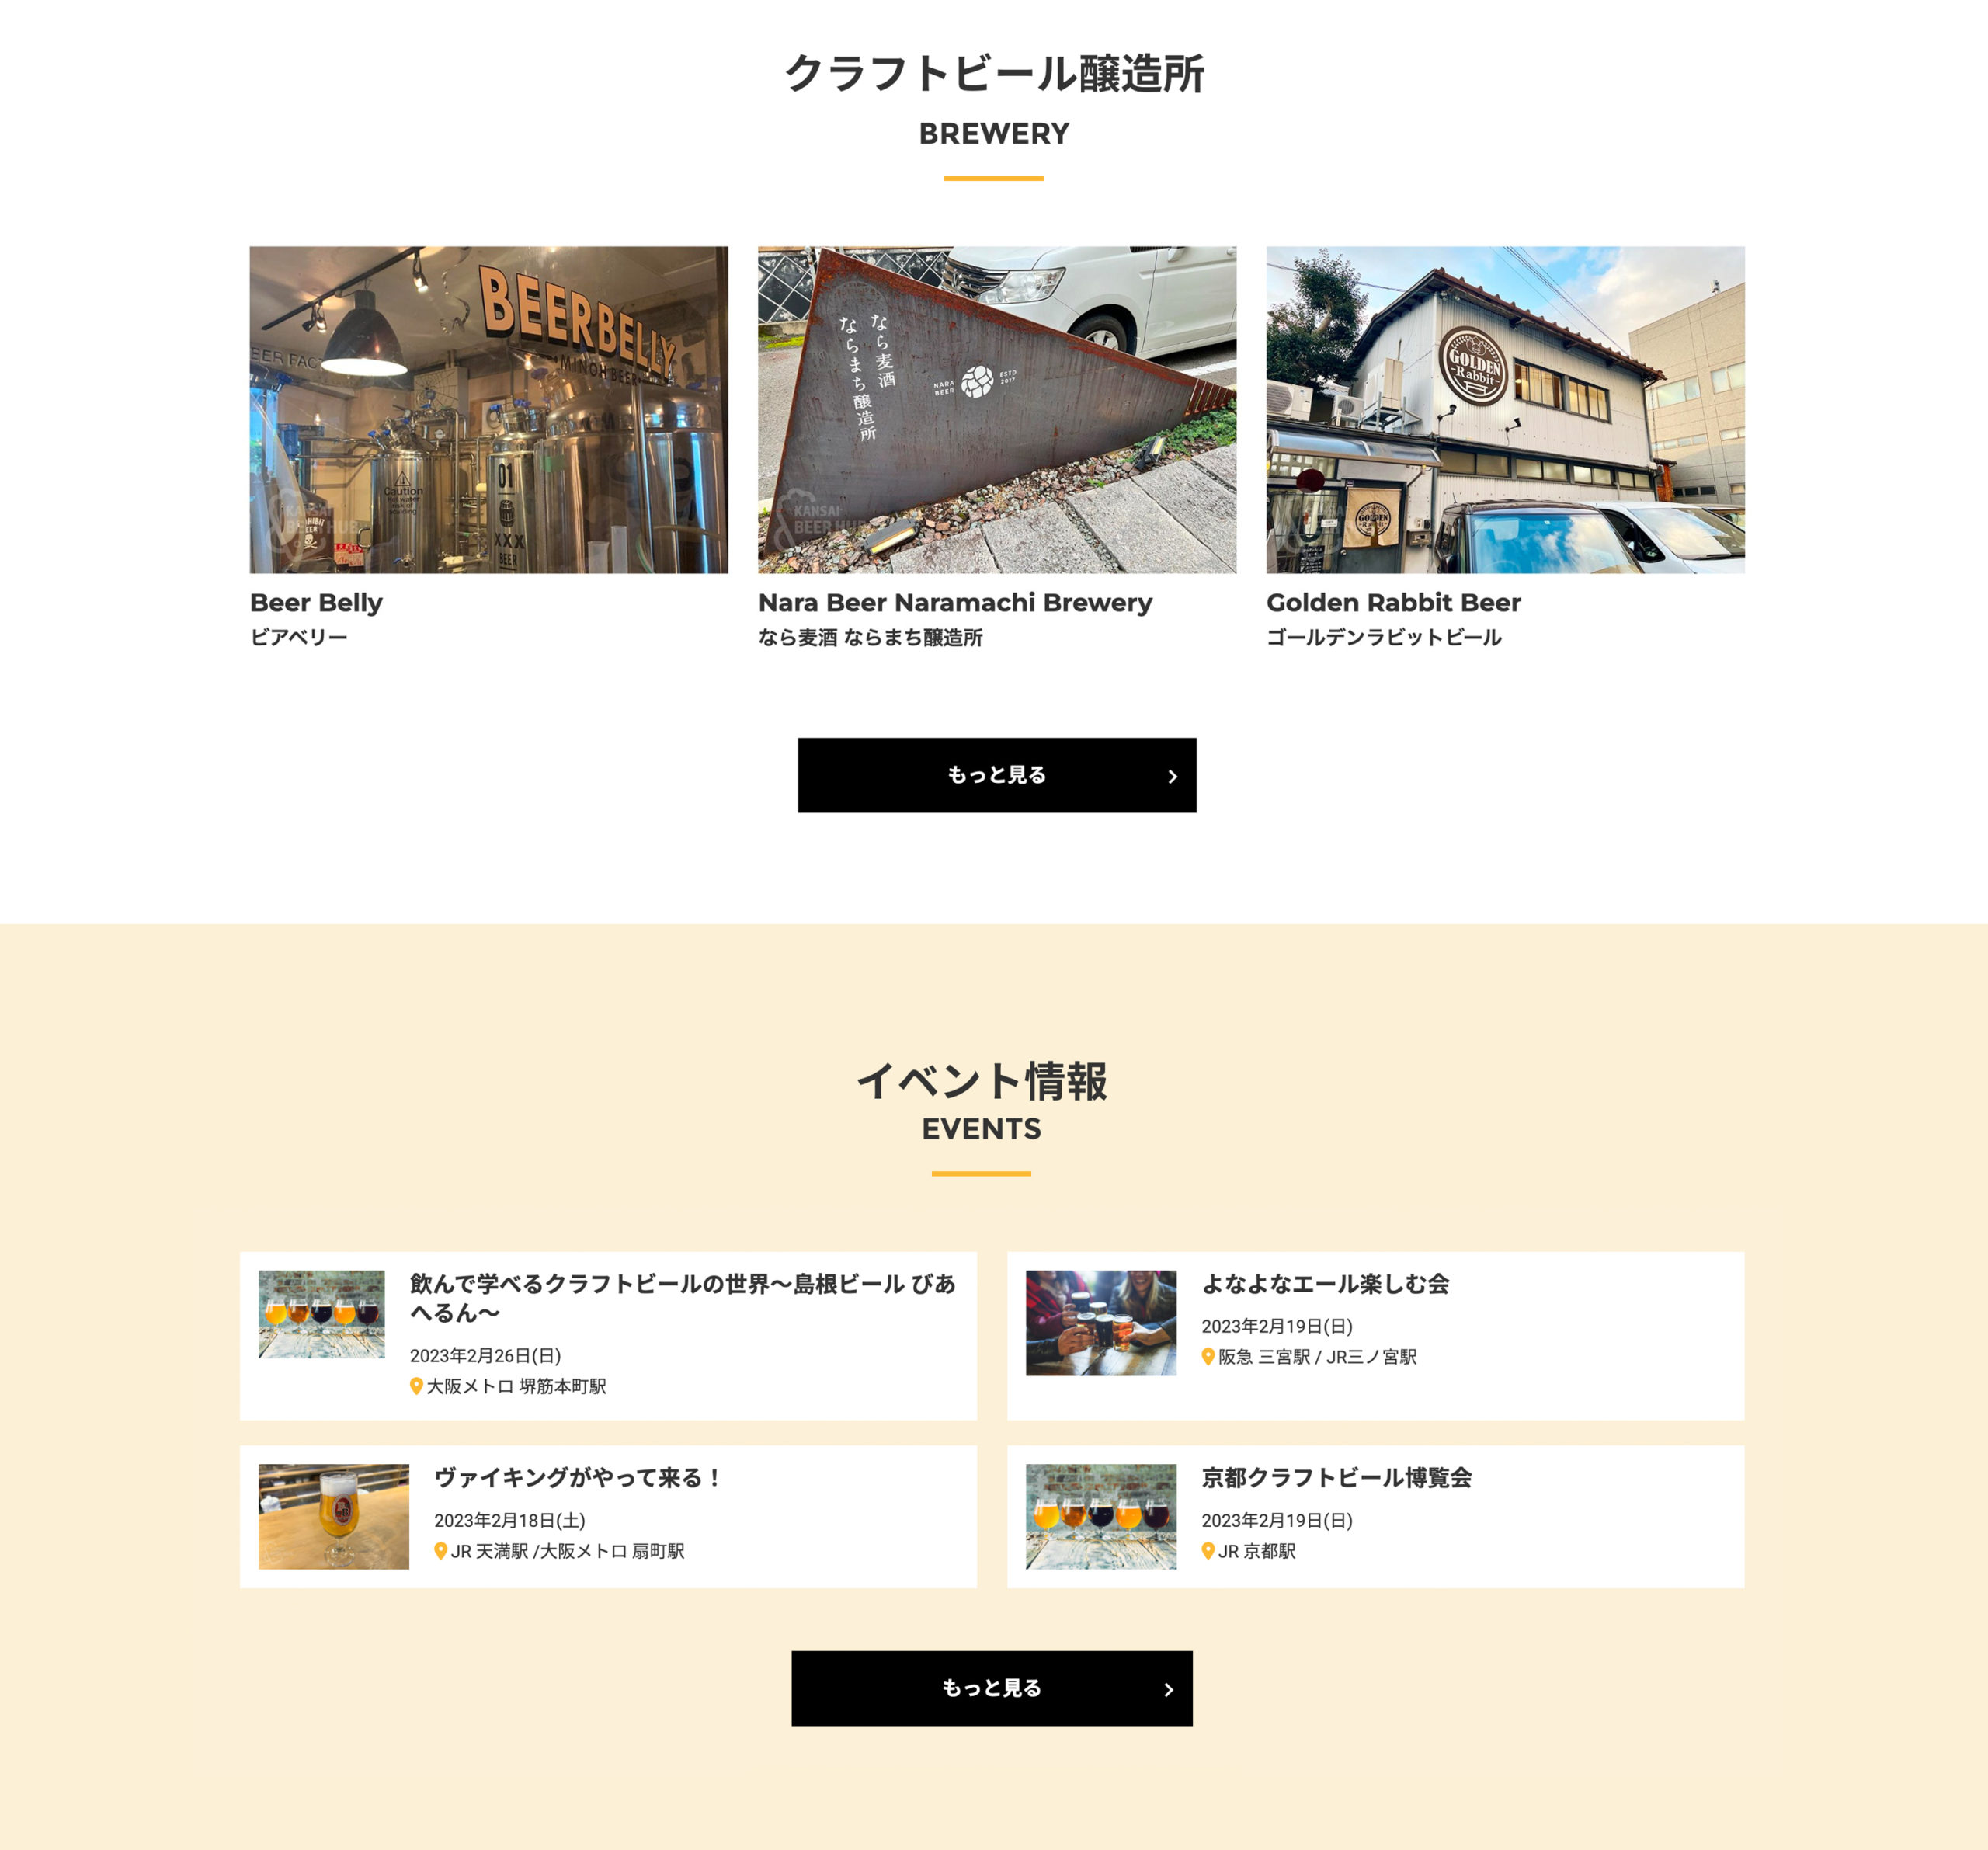 関西ビアハブ - Kansai Beer Hub Webサイト